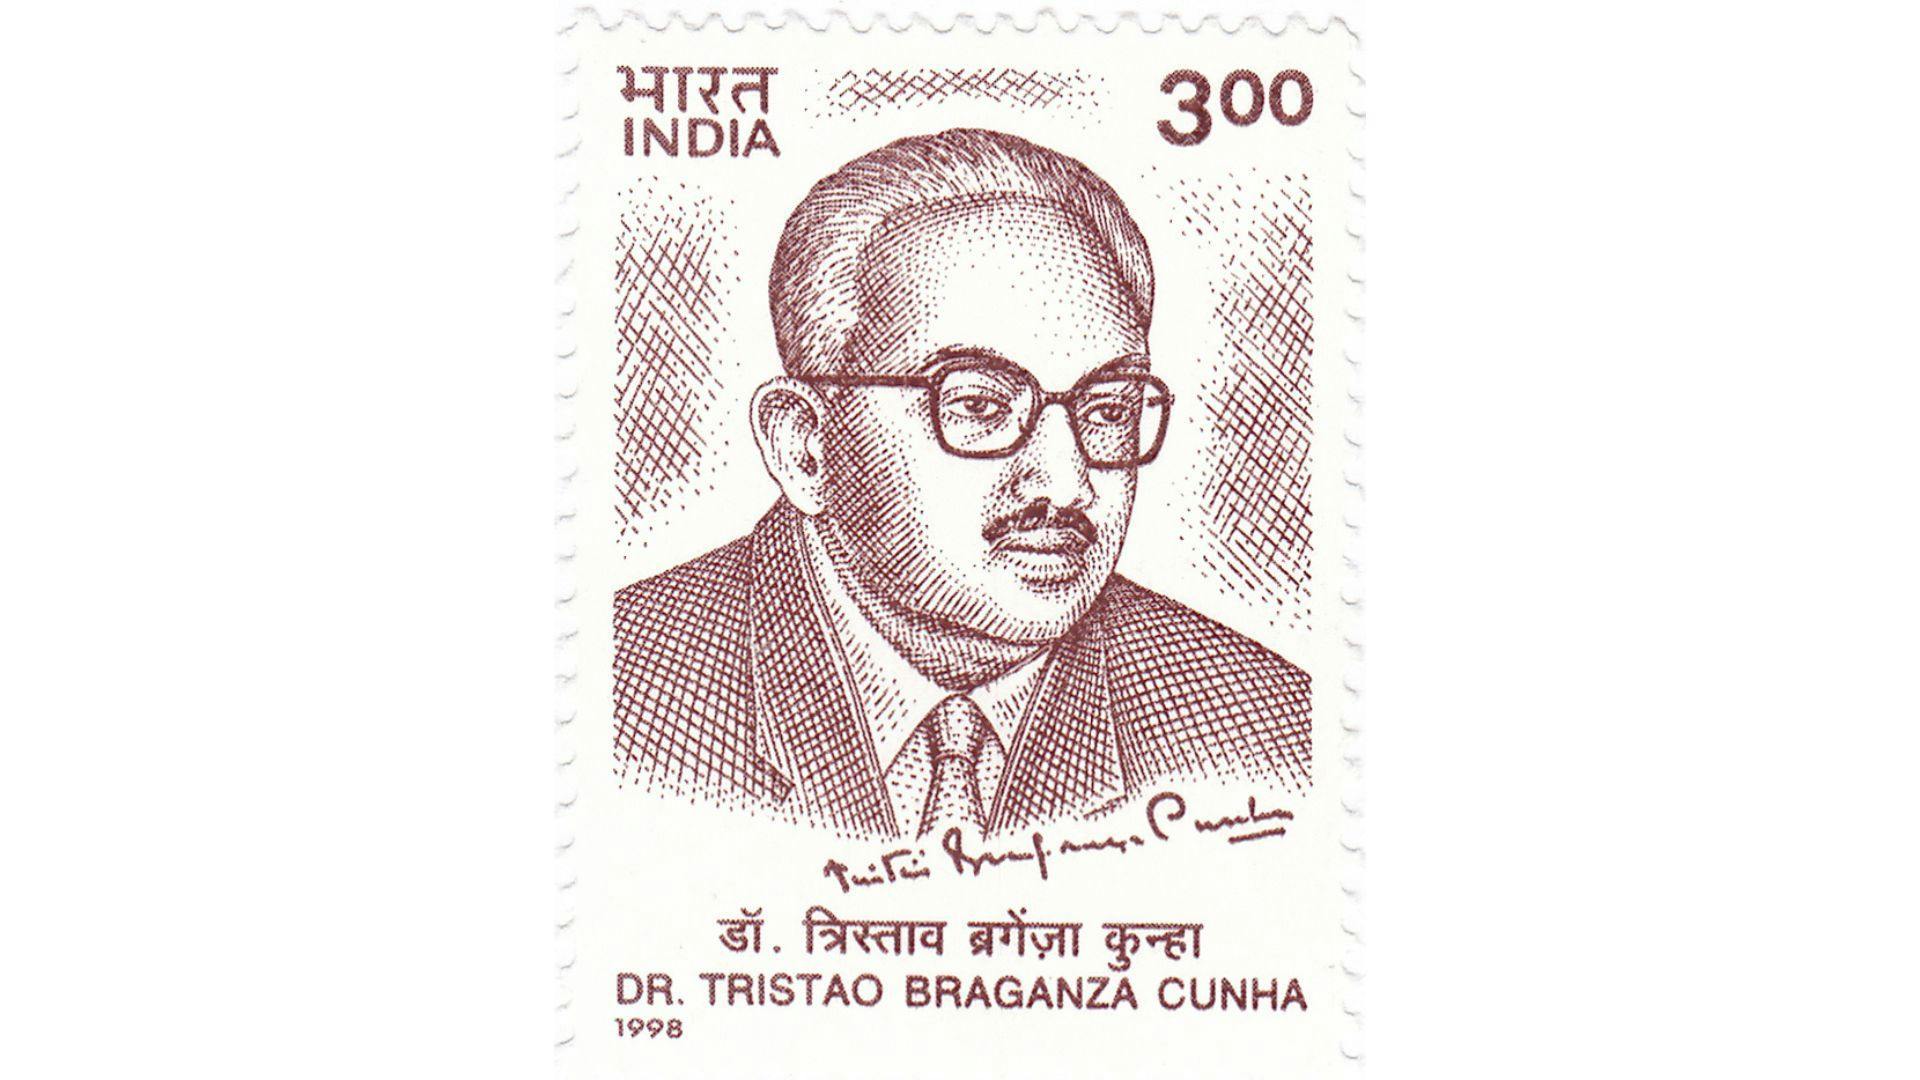 Tristão de Bragança Cunha 1998 stamp of India | Wikimedia Commons